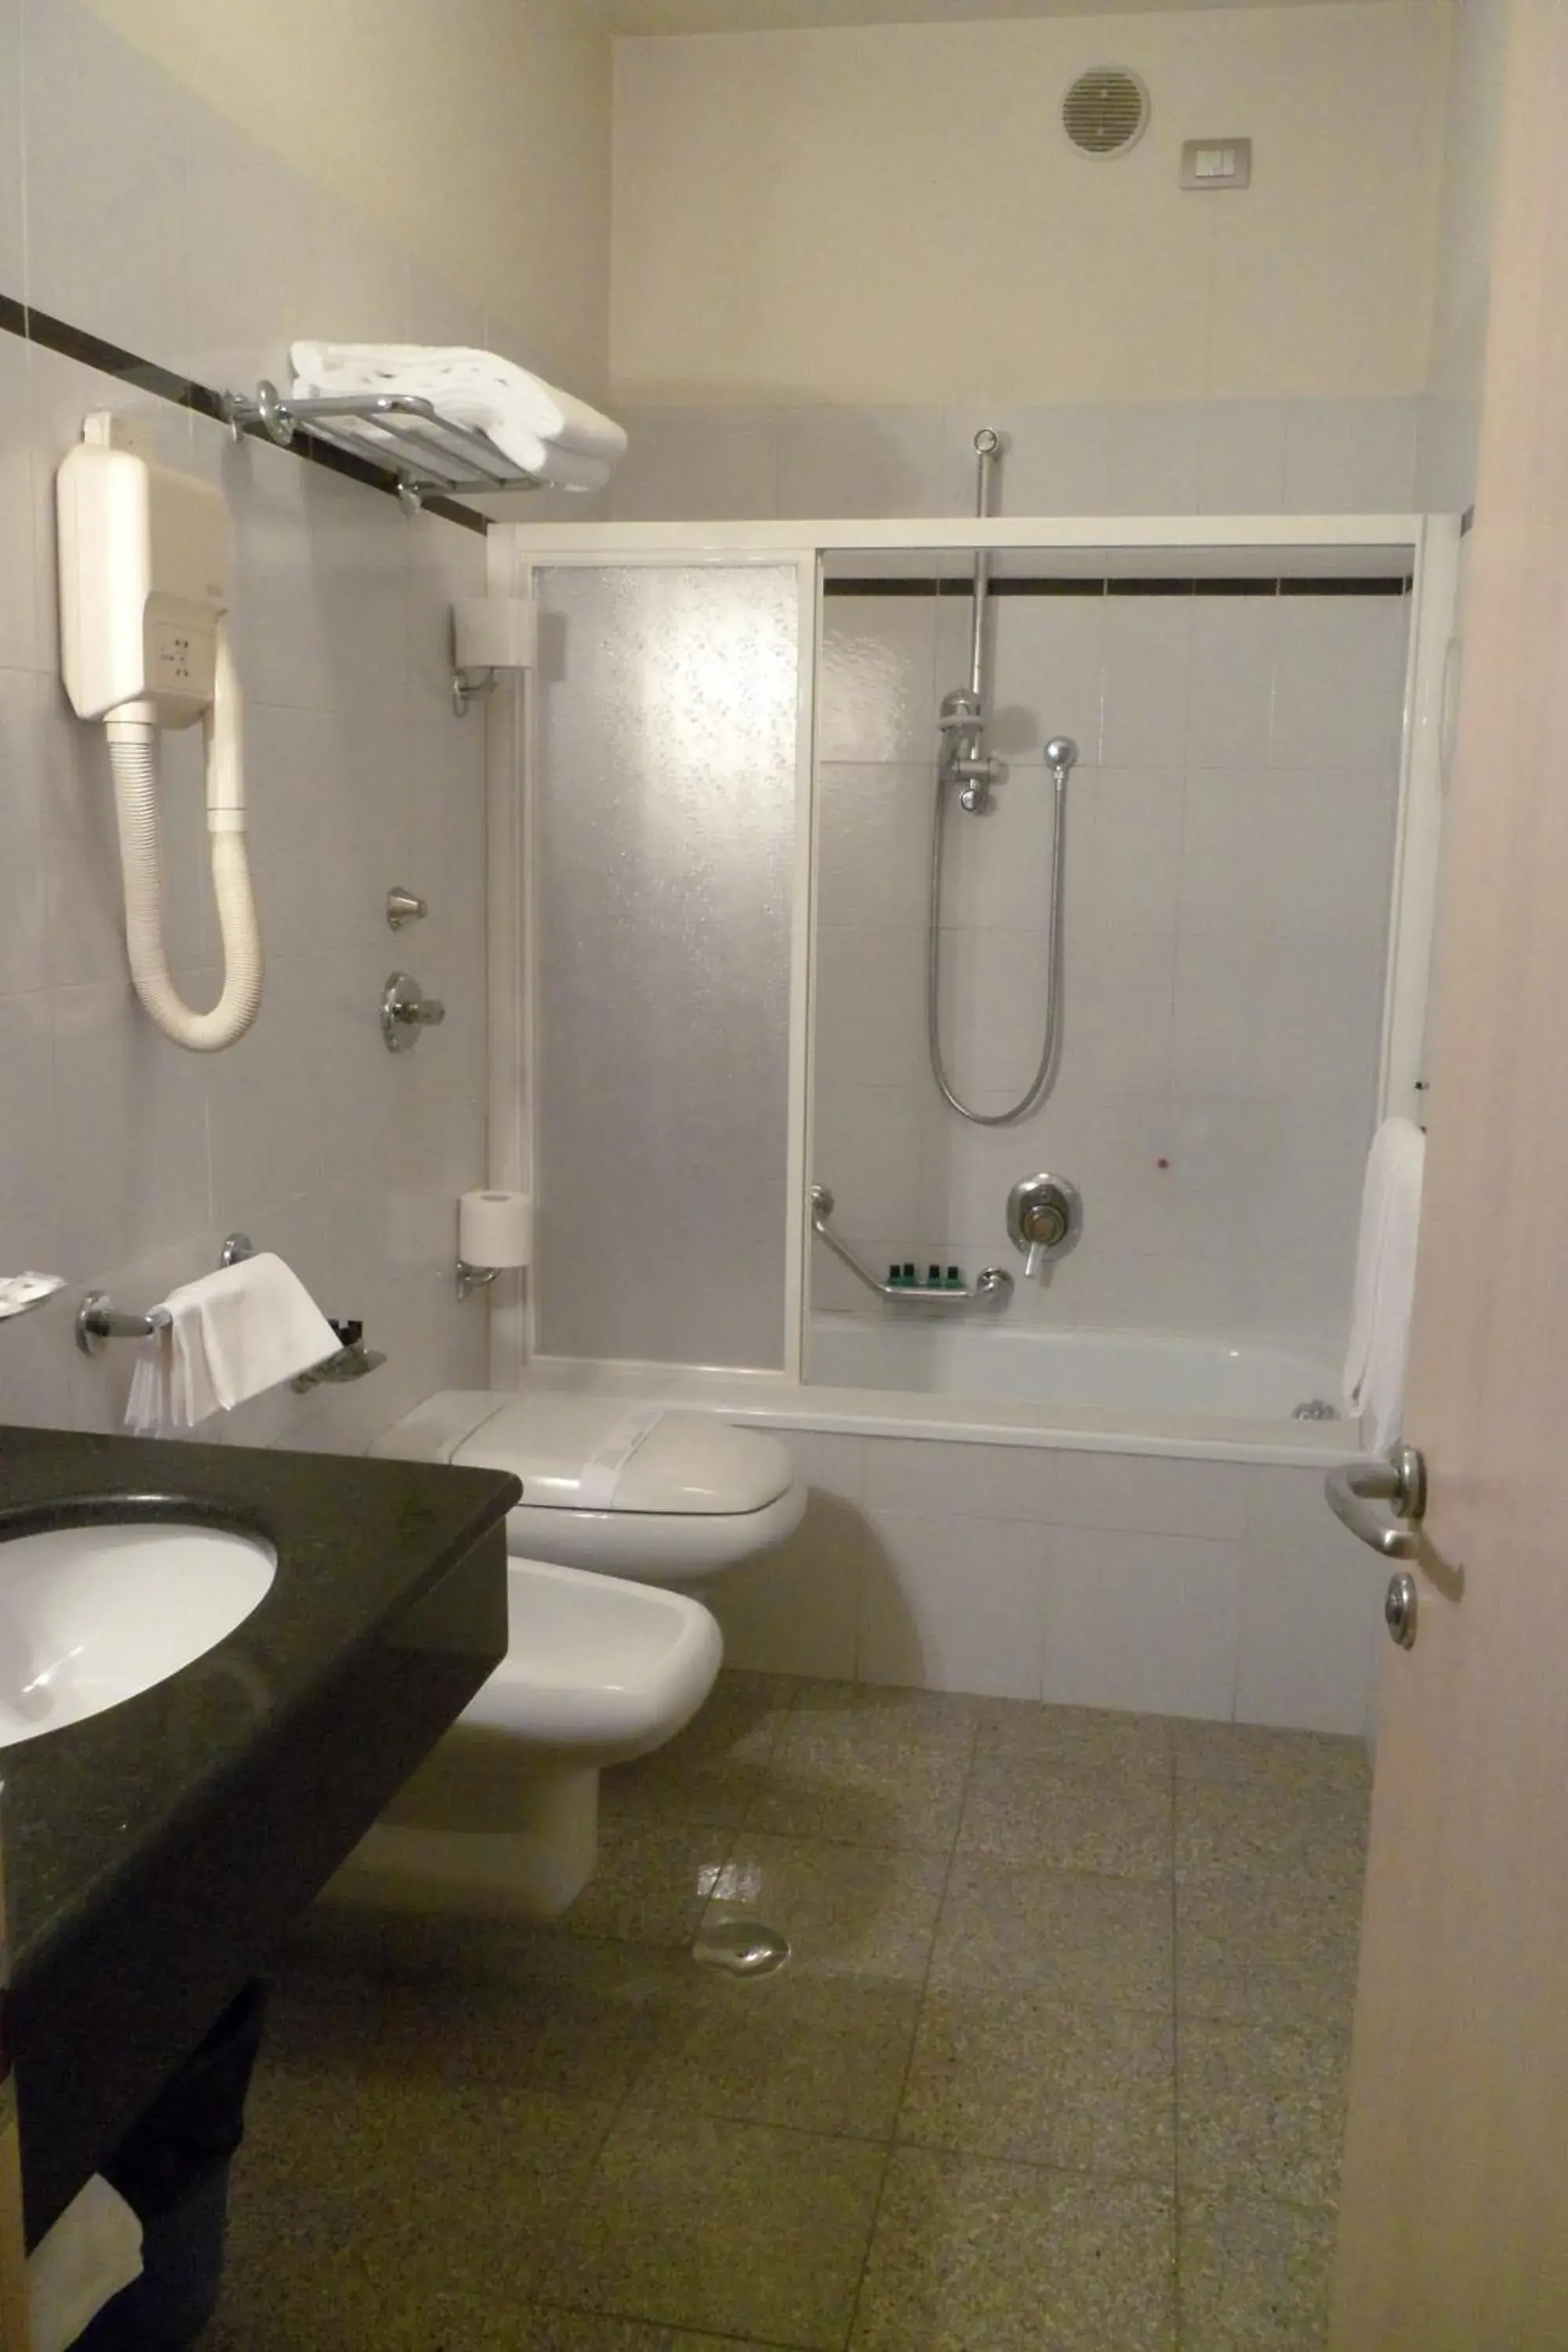 Bathroom in Hotel Eden